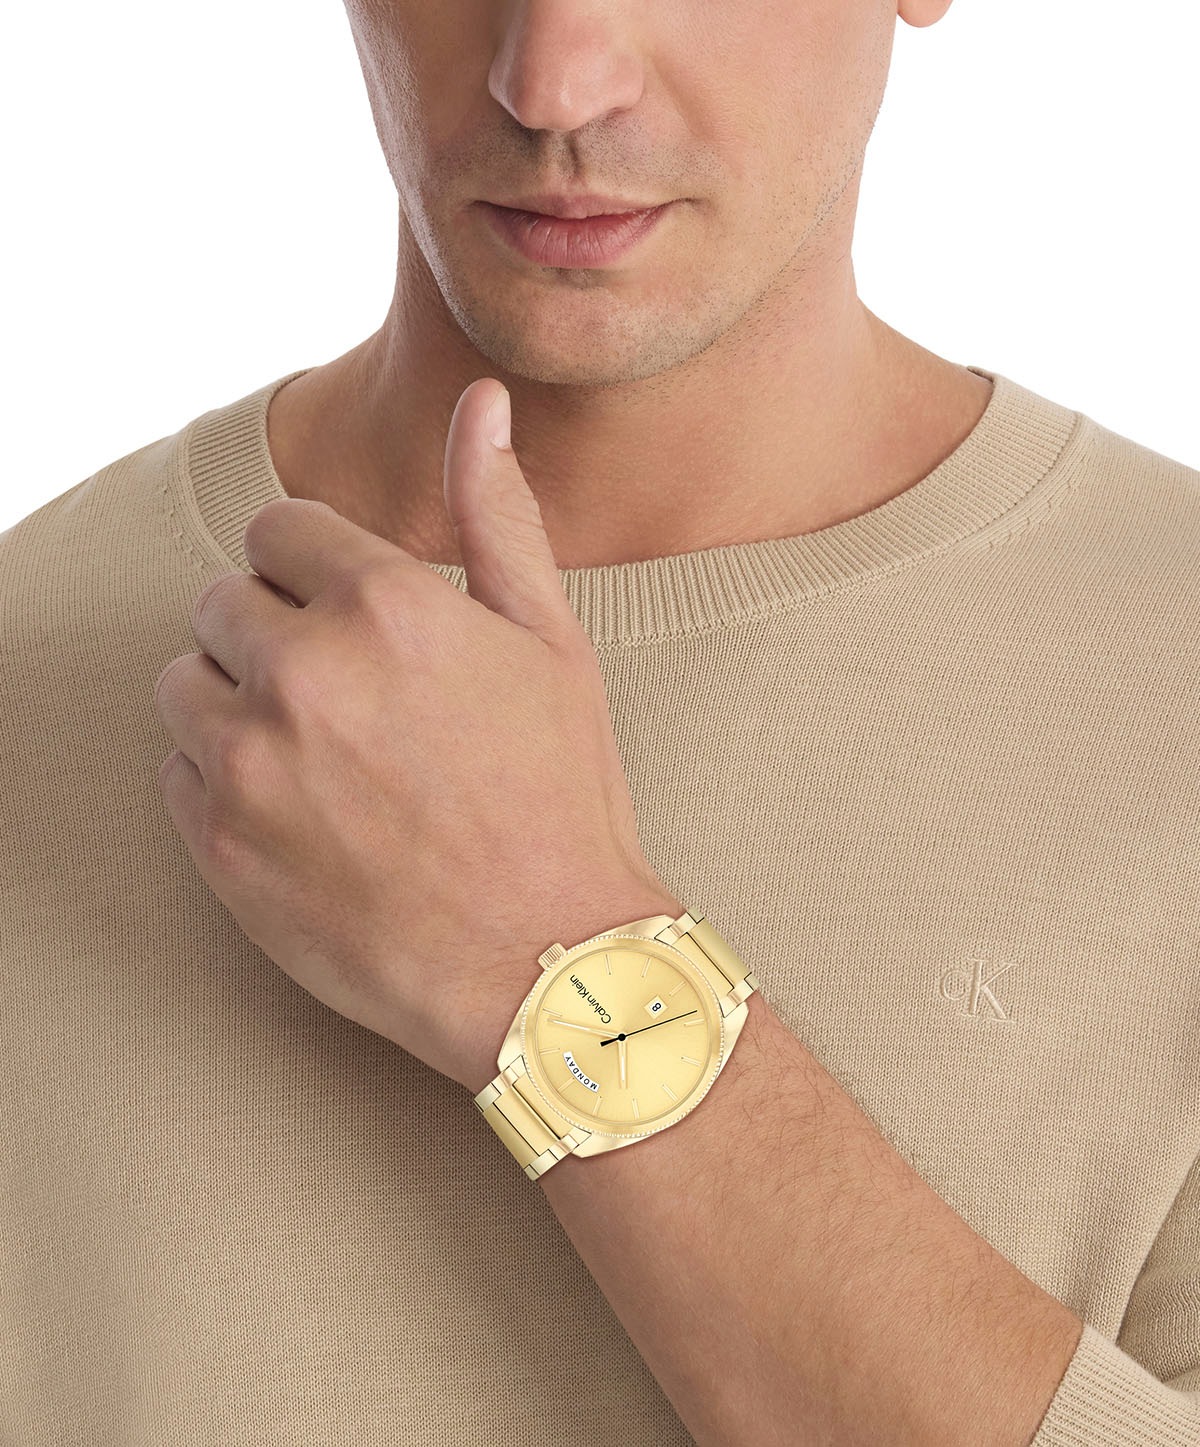 Calvin Klein Quarzuhr »TIMELESS«, Armbanduhr, Herrenuhr, Datum, Mineralglas, IP-Beschichtung